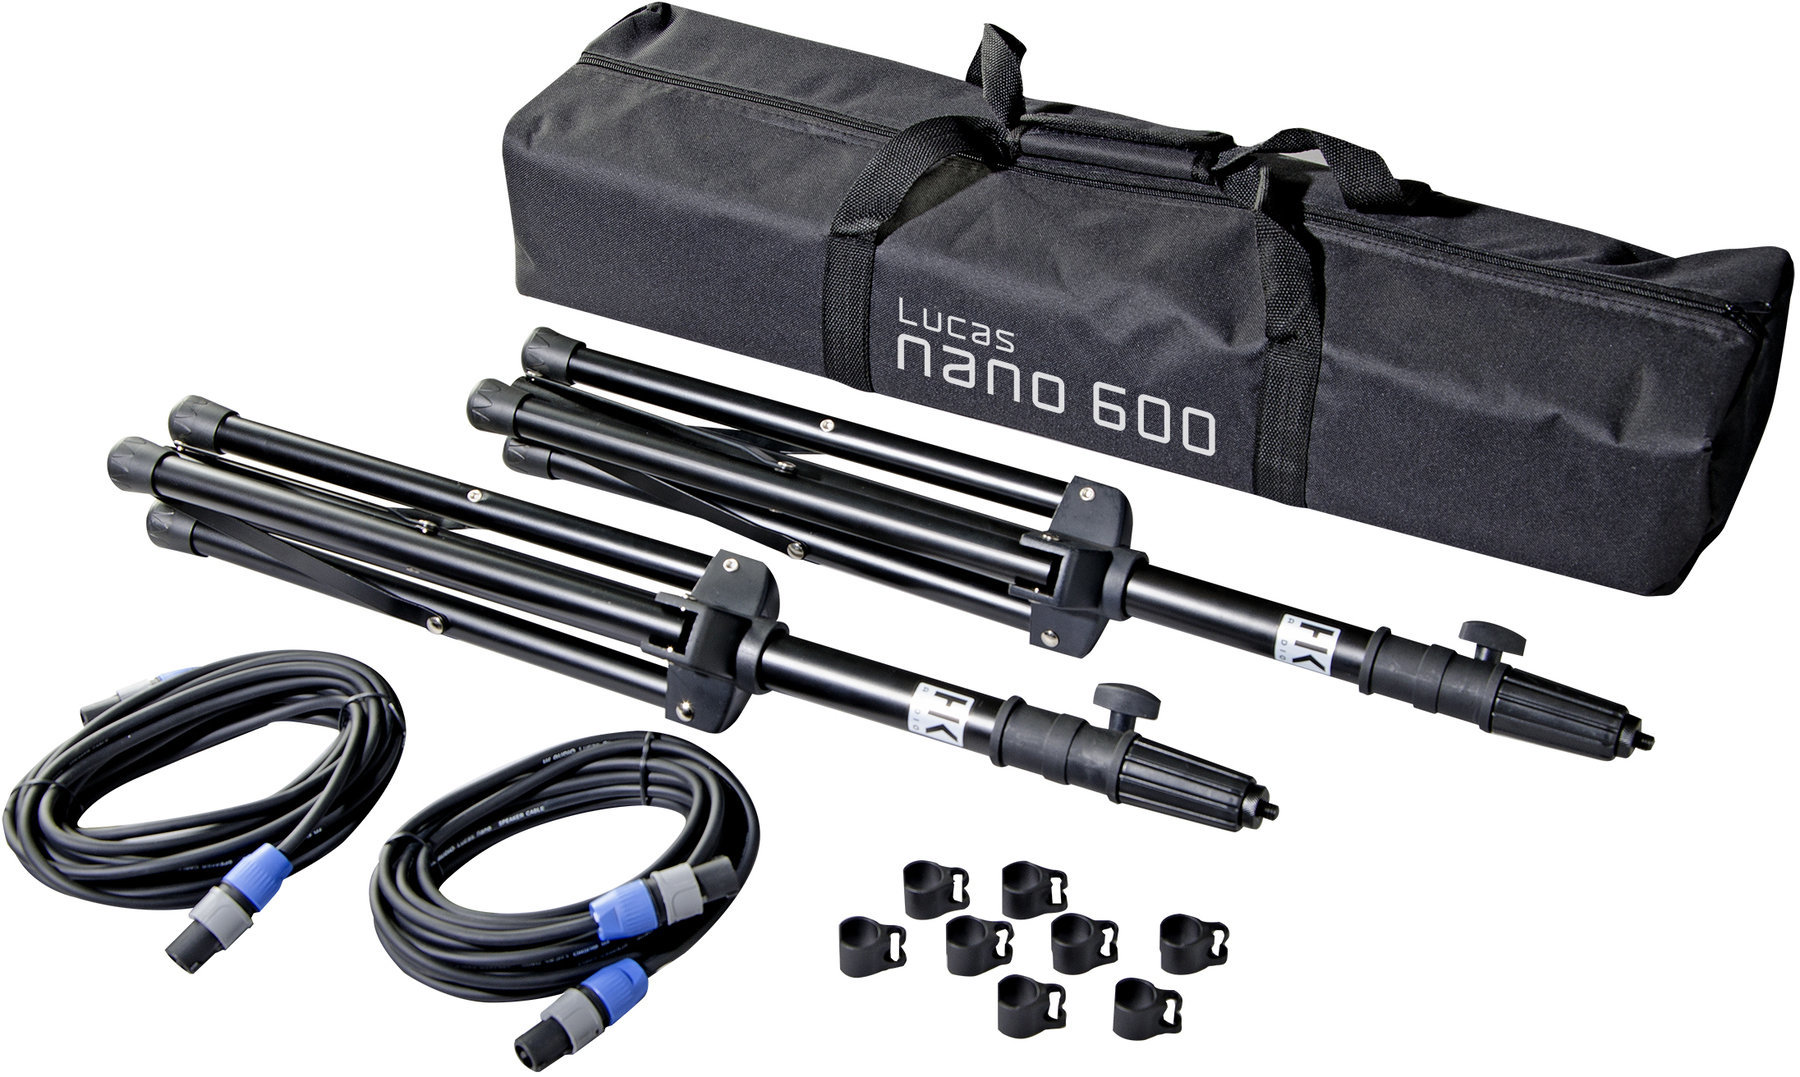 Bară telescopică pentru boxă HK Audio L.U.C.A.S. NANO 600 Stereo Stand Add On